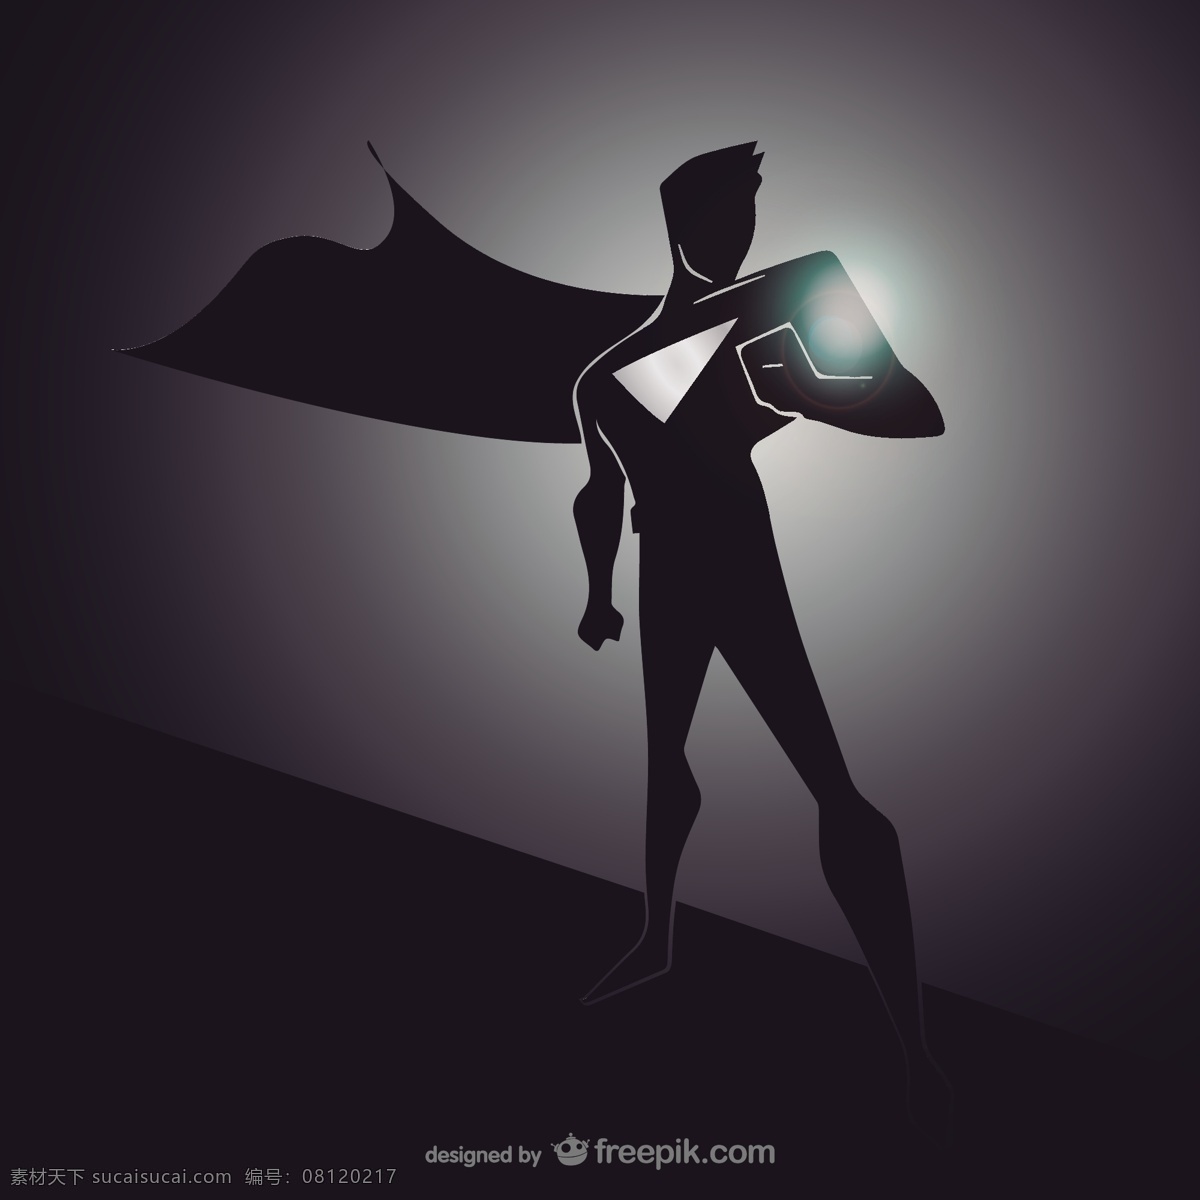 黑人 英雄 剪影 漫画 人物 超级英雄 黑色 插图 超级 插画 矢量图